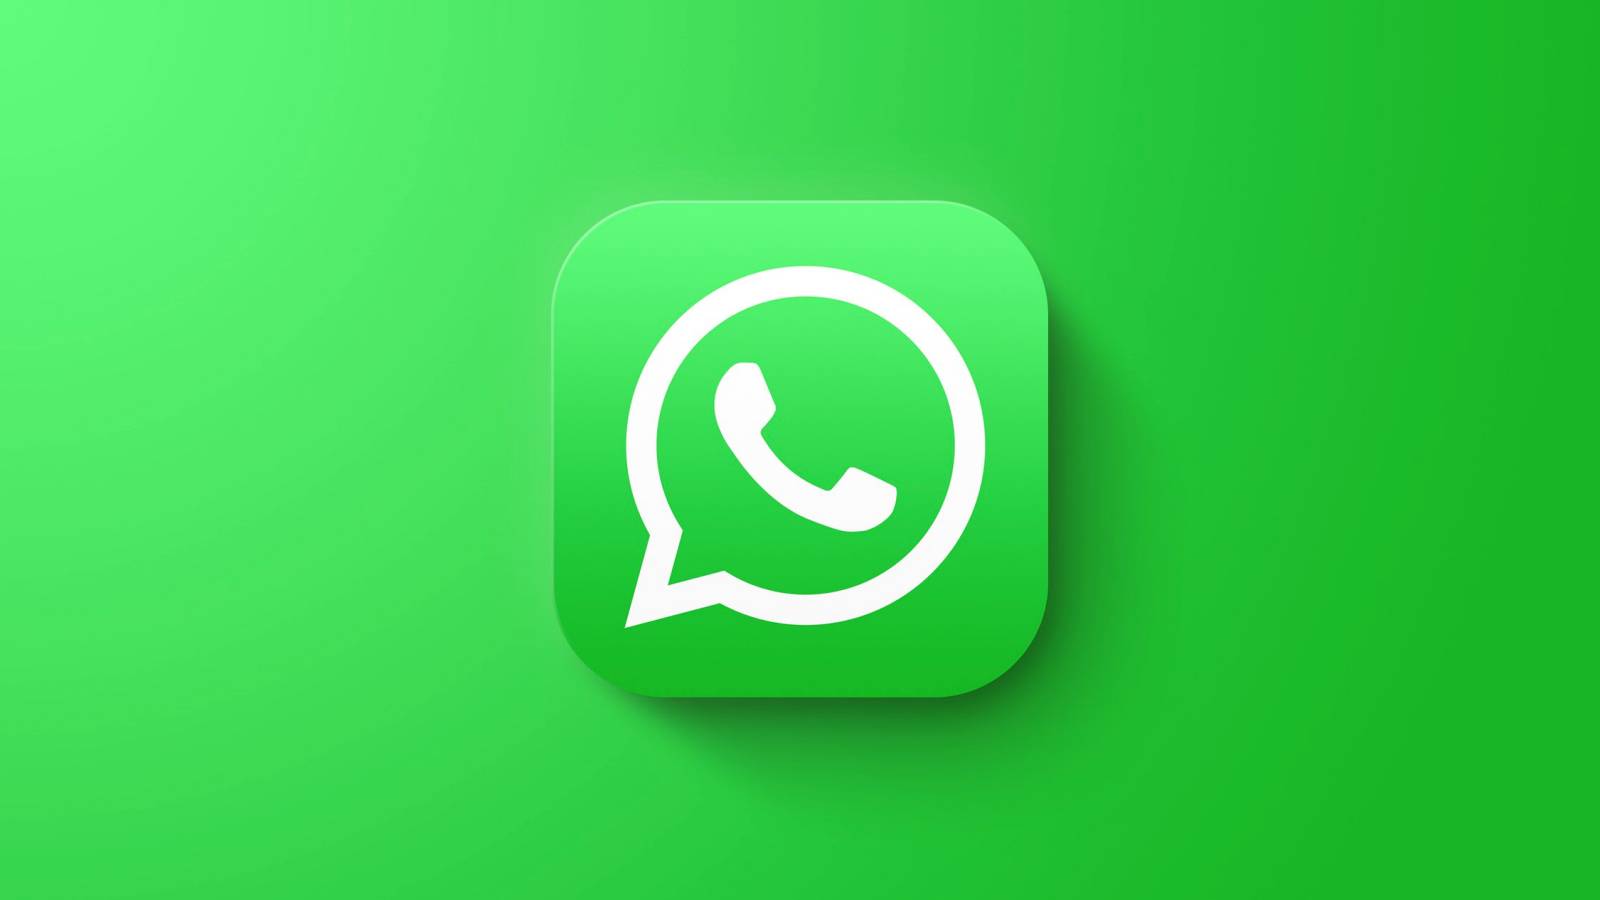 Notificación OFICIAL de WhatsApp 2 Grandes cambios iPhone Android